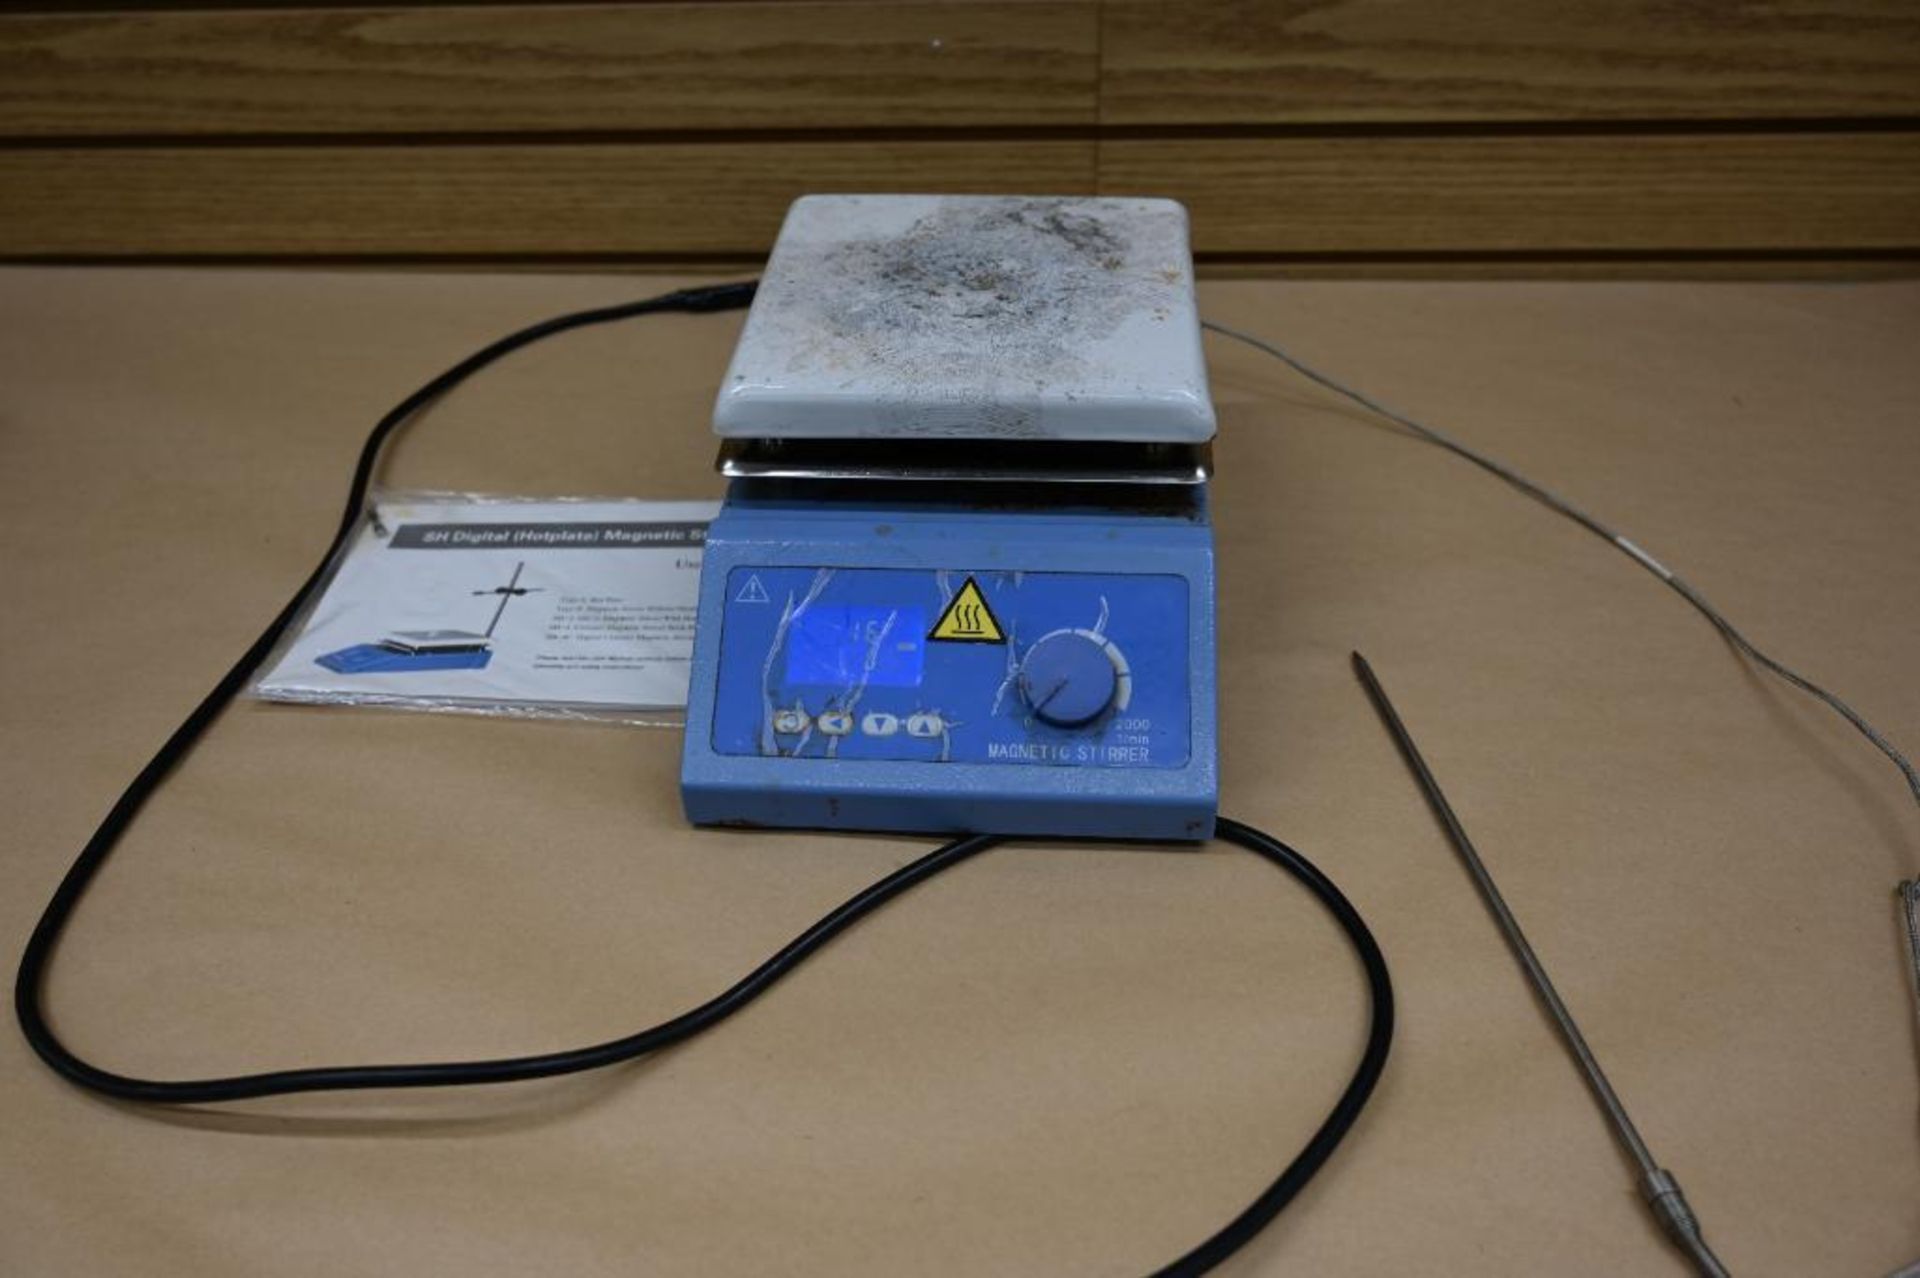 SH Digital Hot Plate Magnetic Stirrer - Image 5 of 9